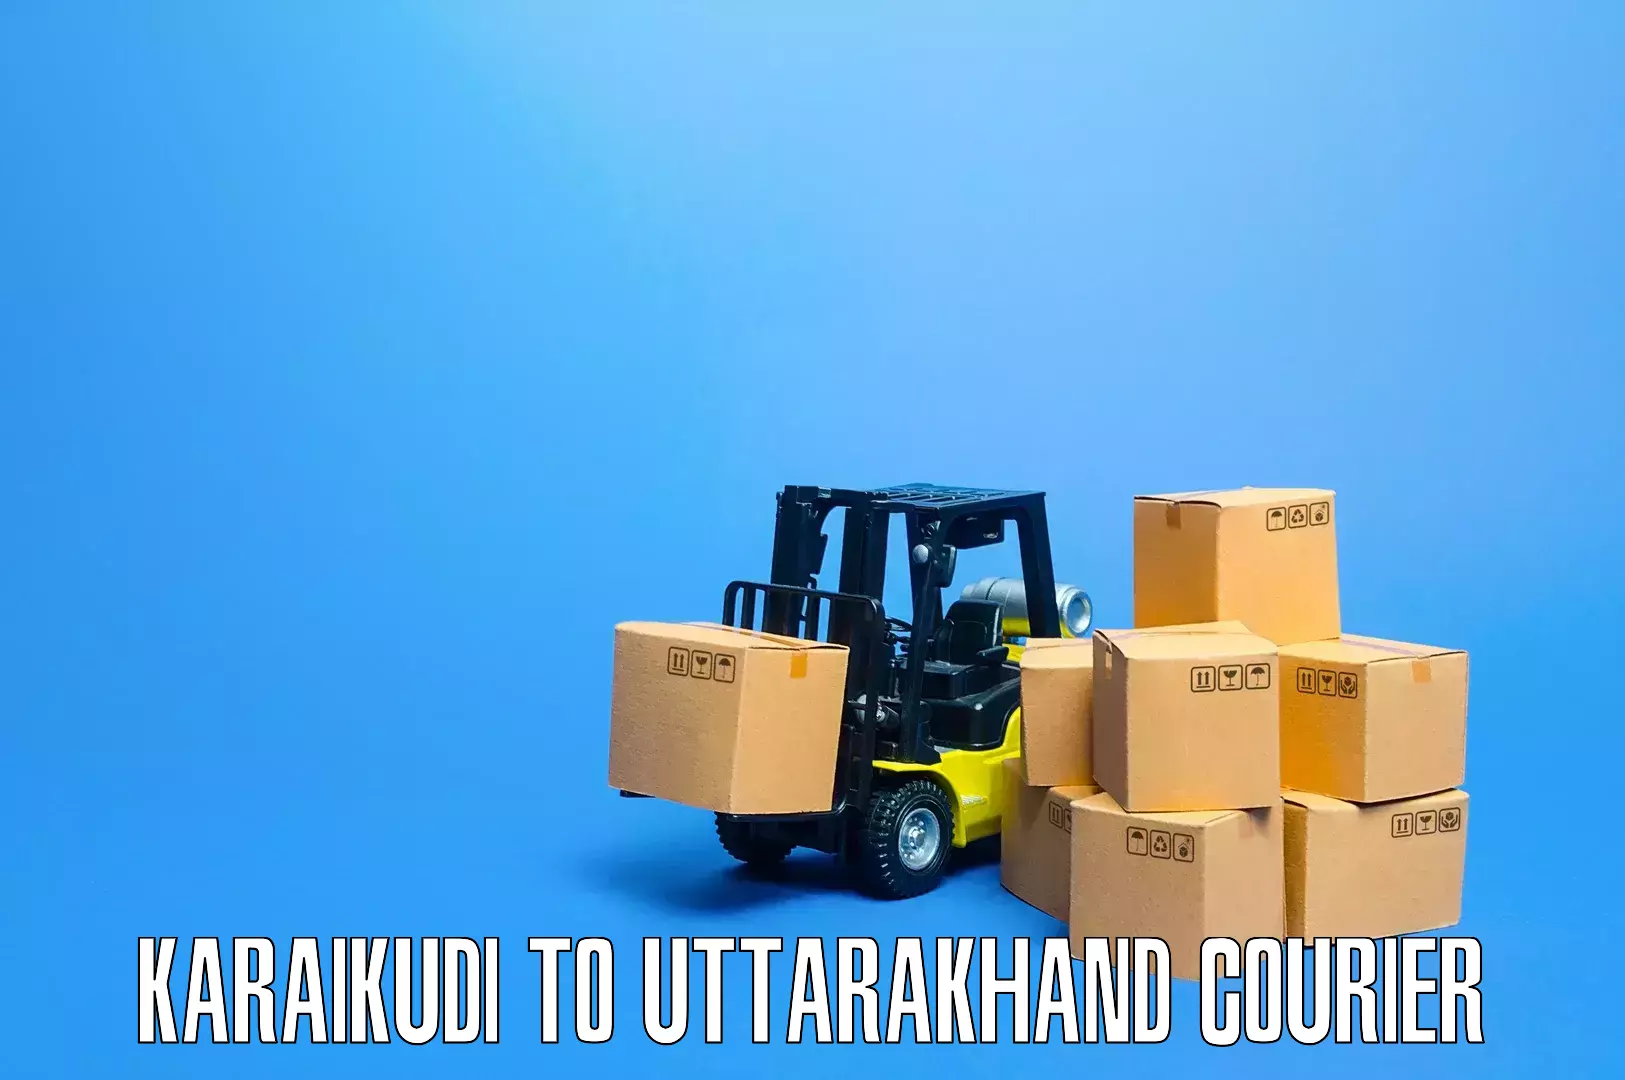 Professional goods transport Karaikudi to Gumkhal